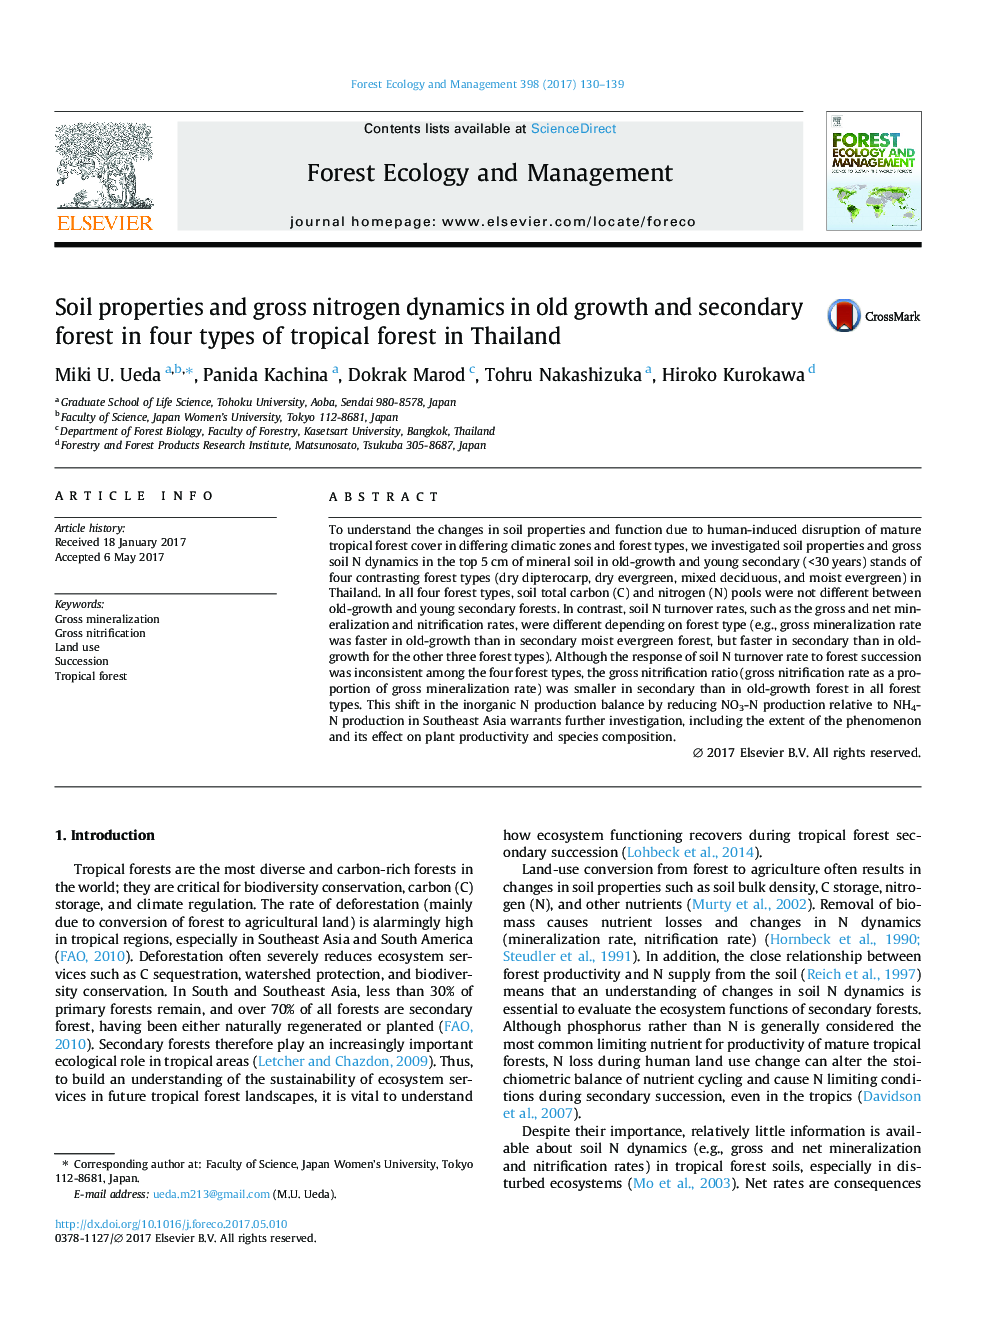 خواص خاک و دینامیک نیتروژن ناخالص در رشد و جنگل ثانویه در چهار نوع جنگل گرمسیری در تایلند 